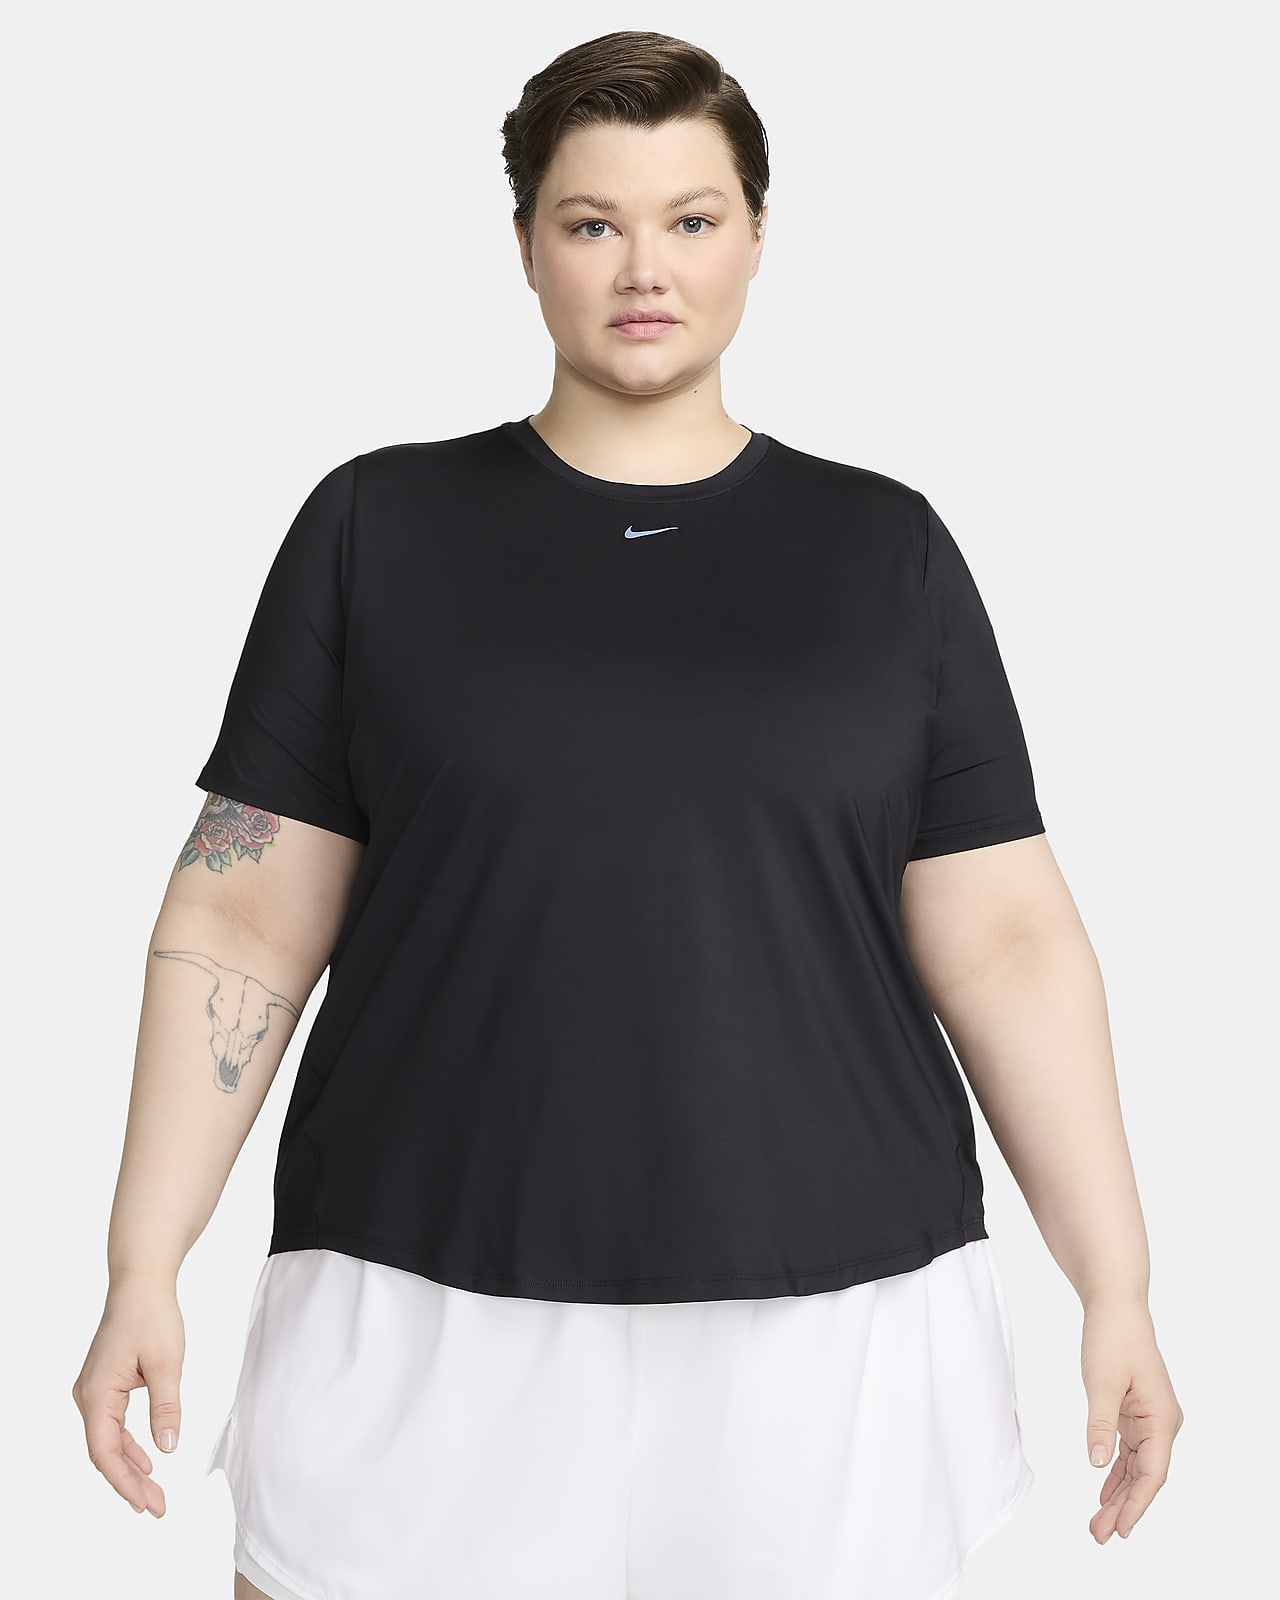 Γυναικεία κοντομάνικη μπλούζα Dri-FIT Nike One Classic (μεγάλα μεγέθη)